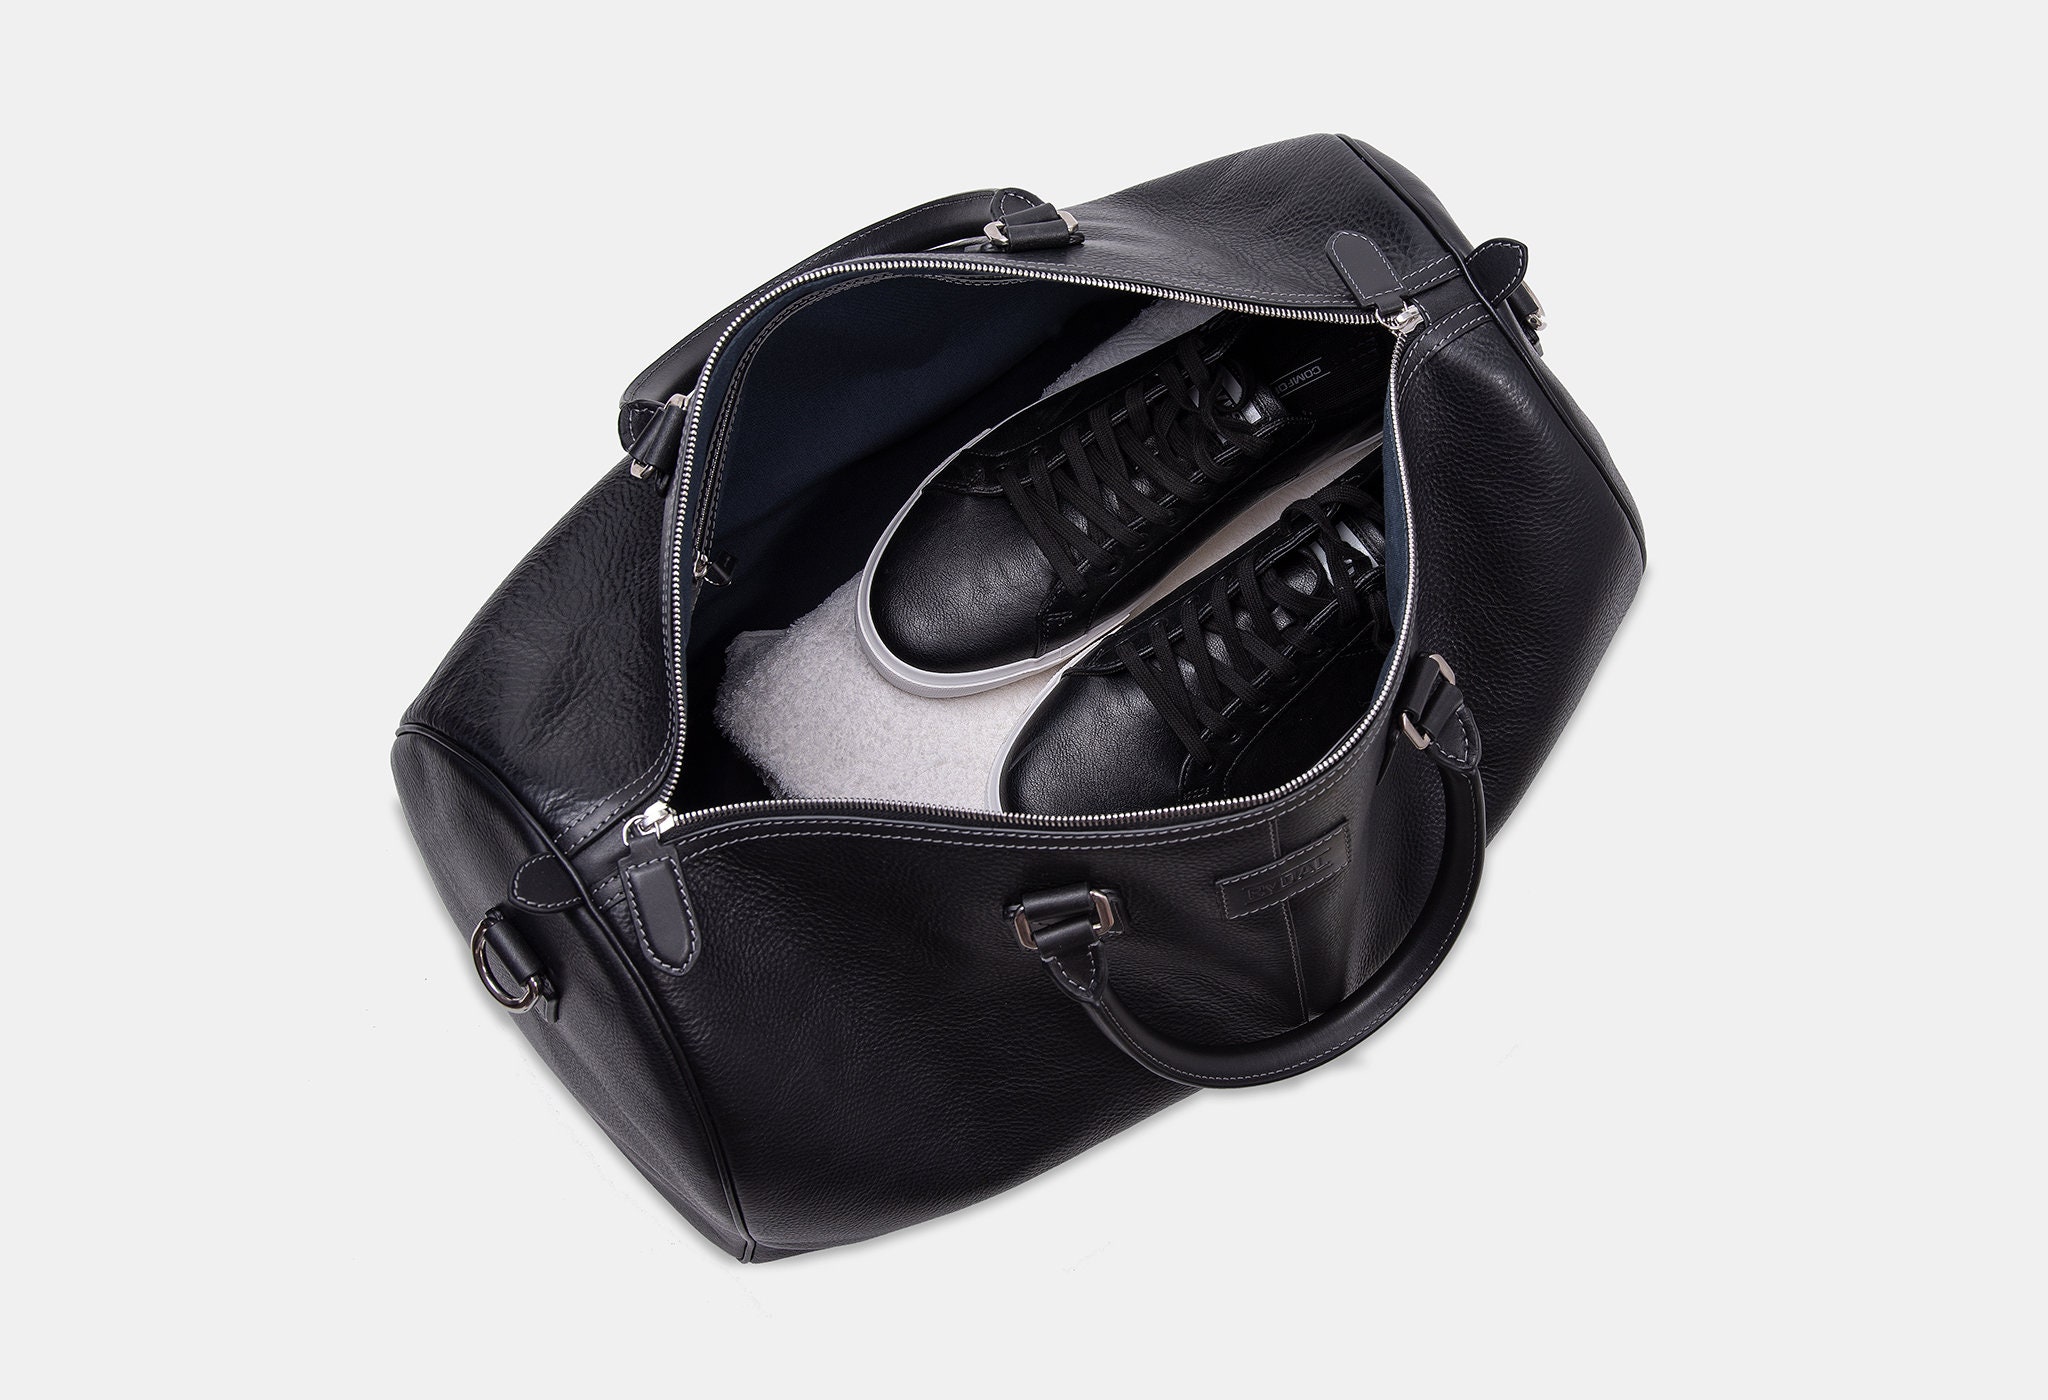 Portland Men's Leather Travel Bag 